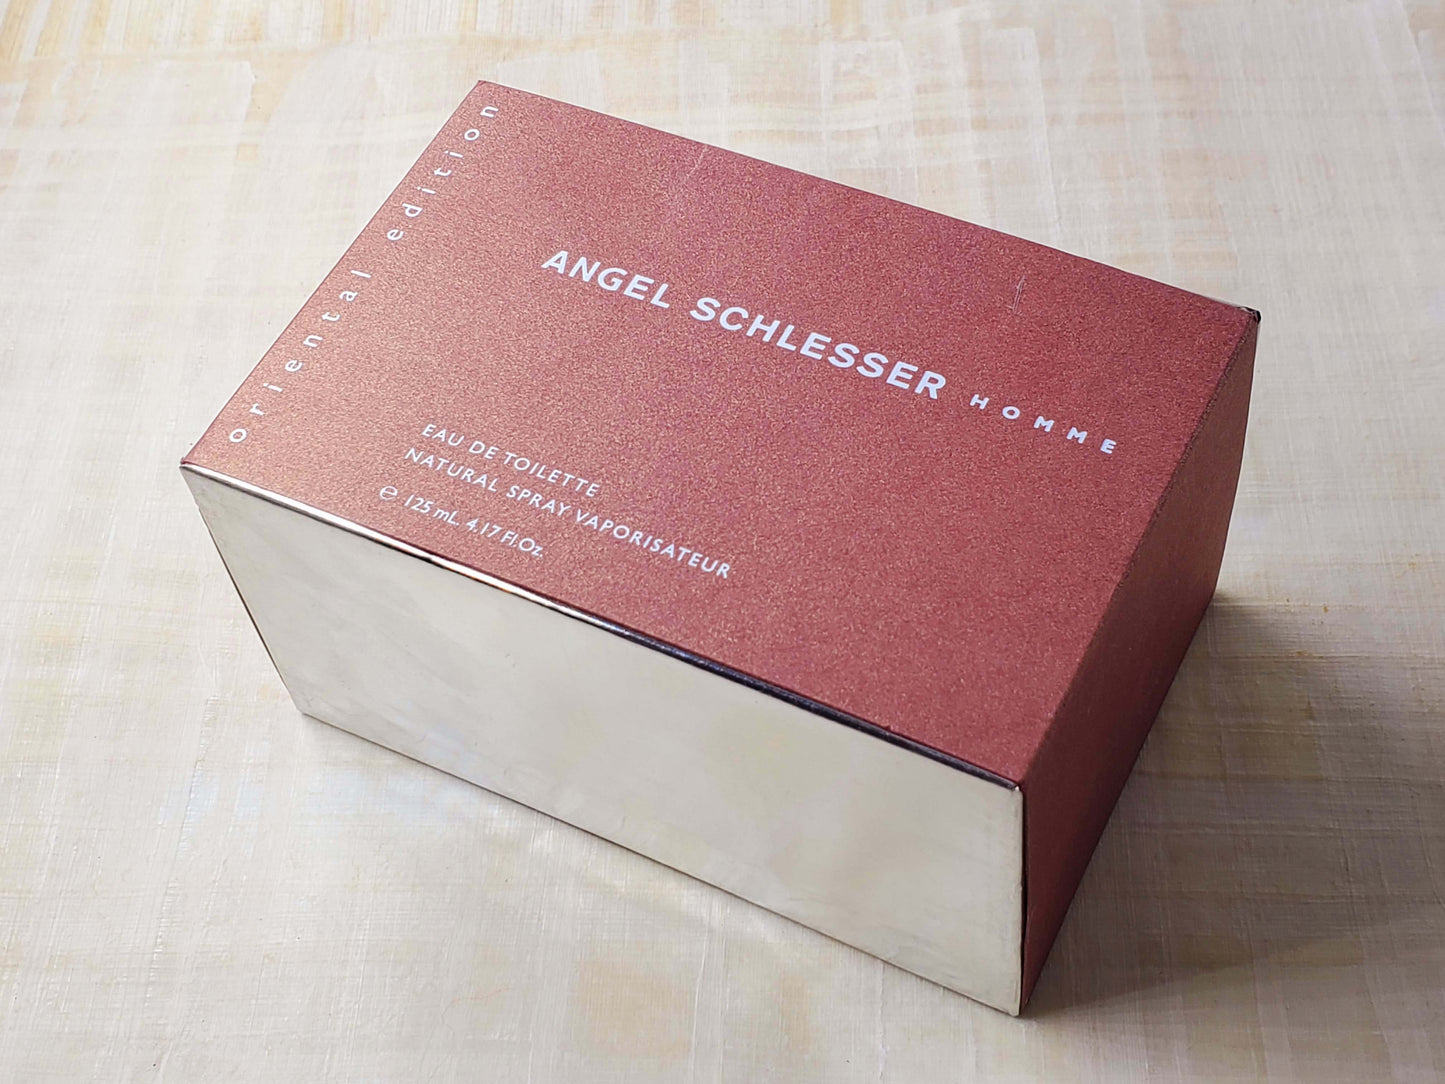 Angel Schlesser Homme Oriental Edition for men EDT Spray 125 ml 4.2 oz, Rare, Vintage